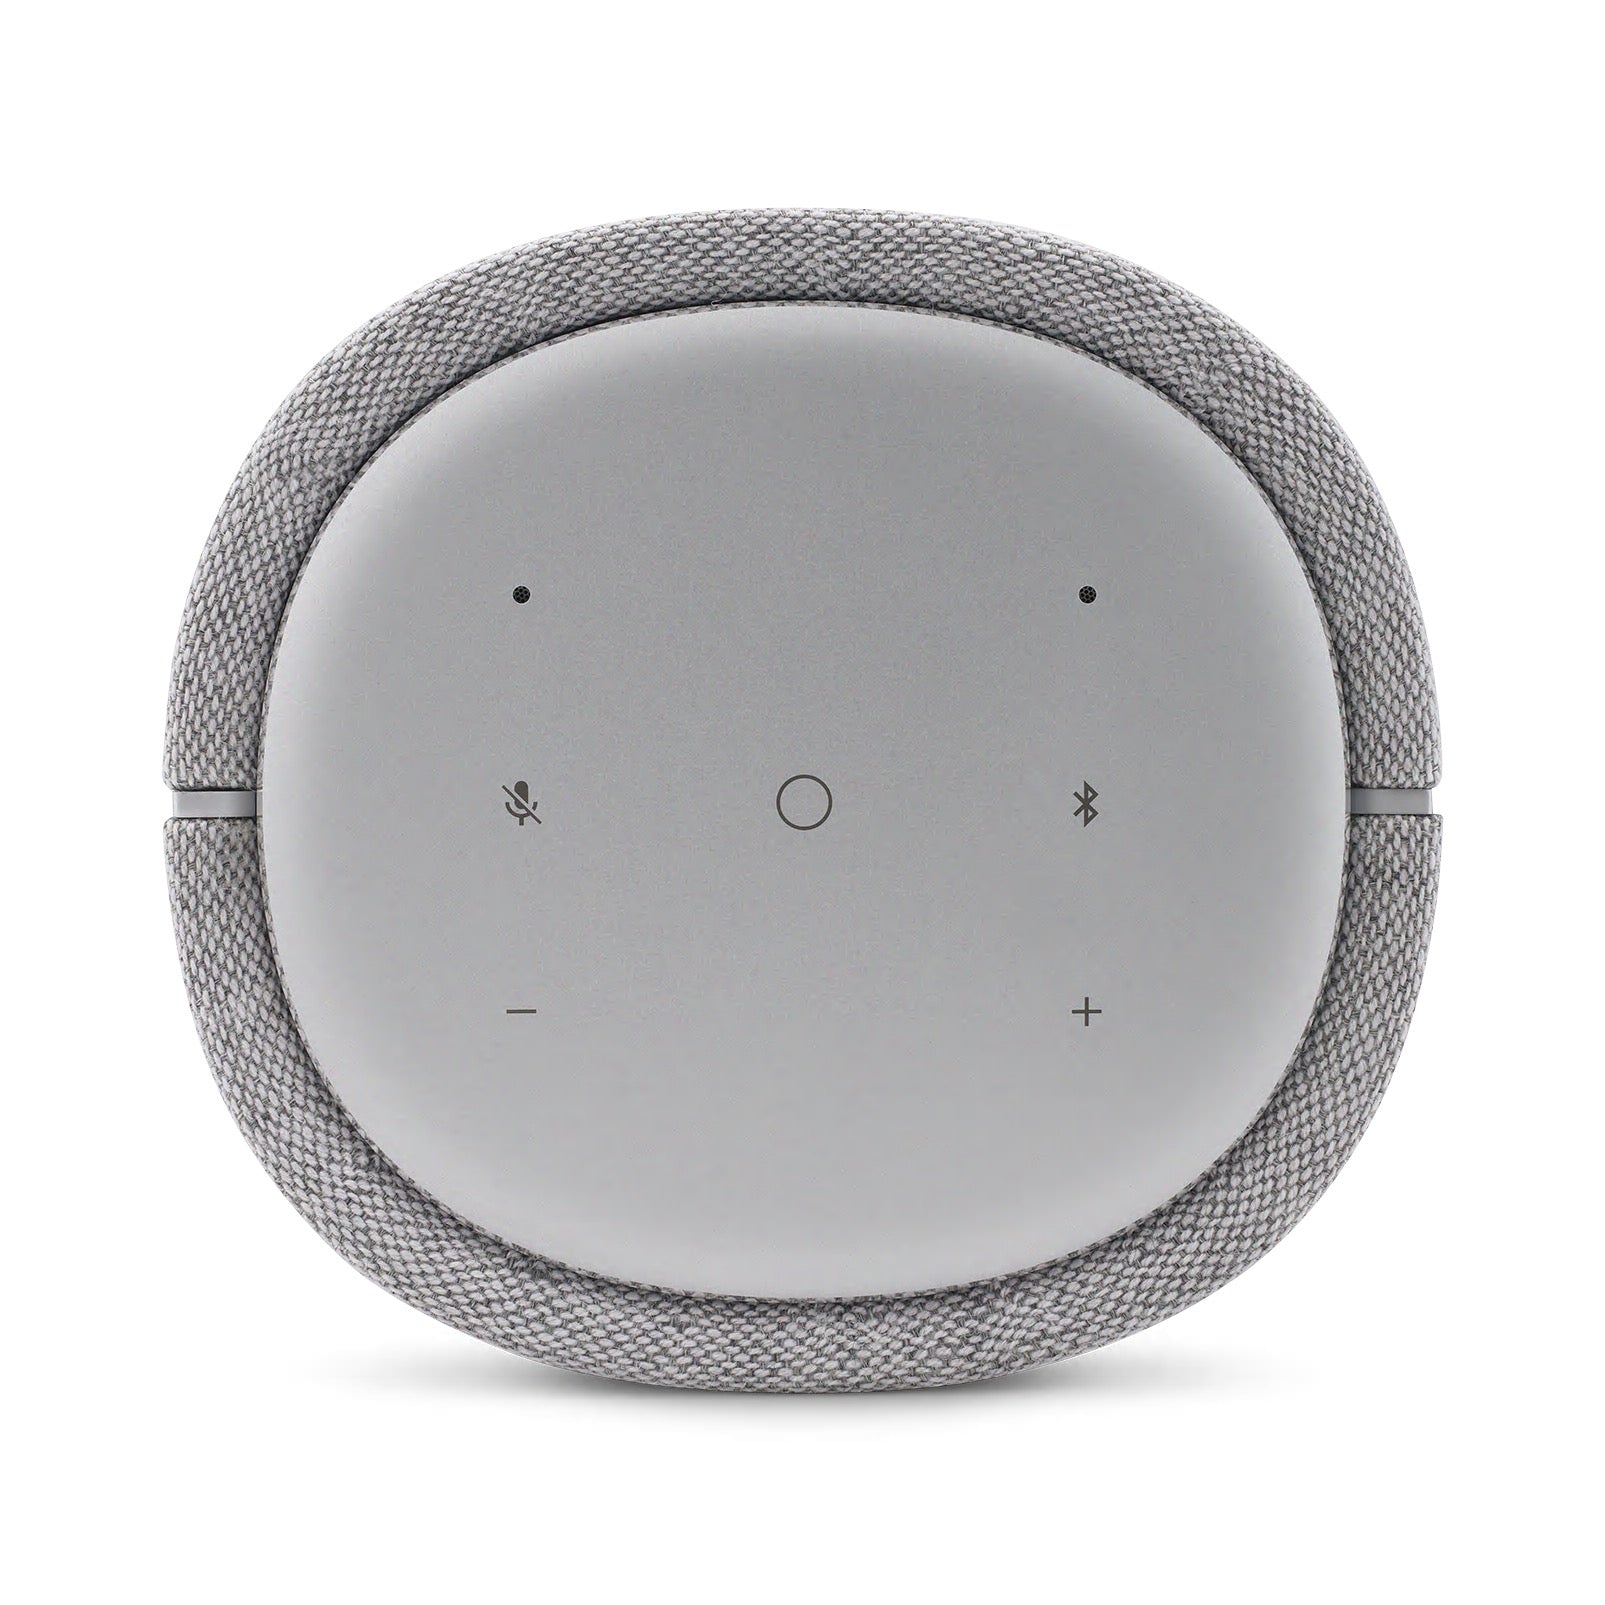 Harman Kardon Citation 100 - Bluetooth Speaker - AVStore